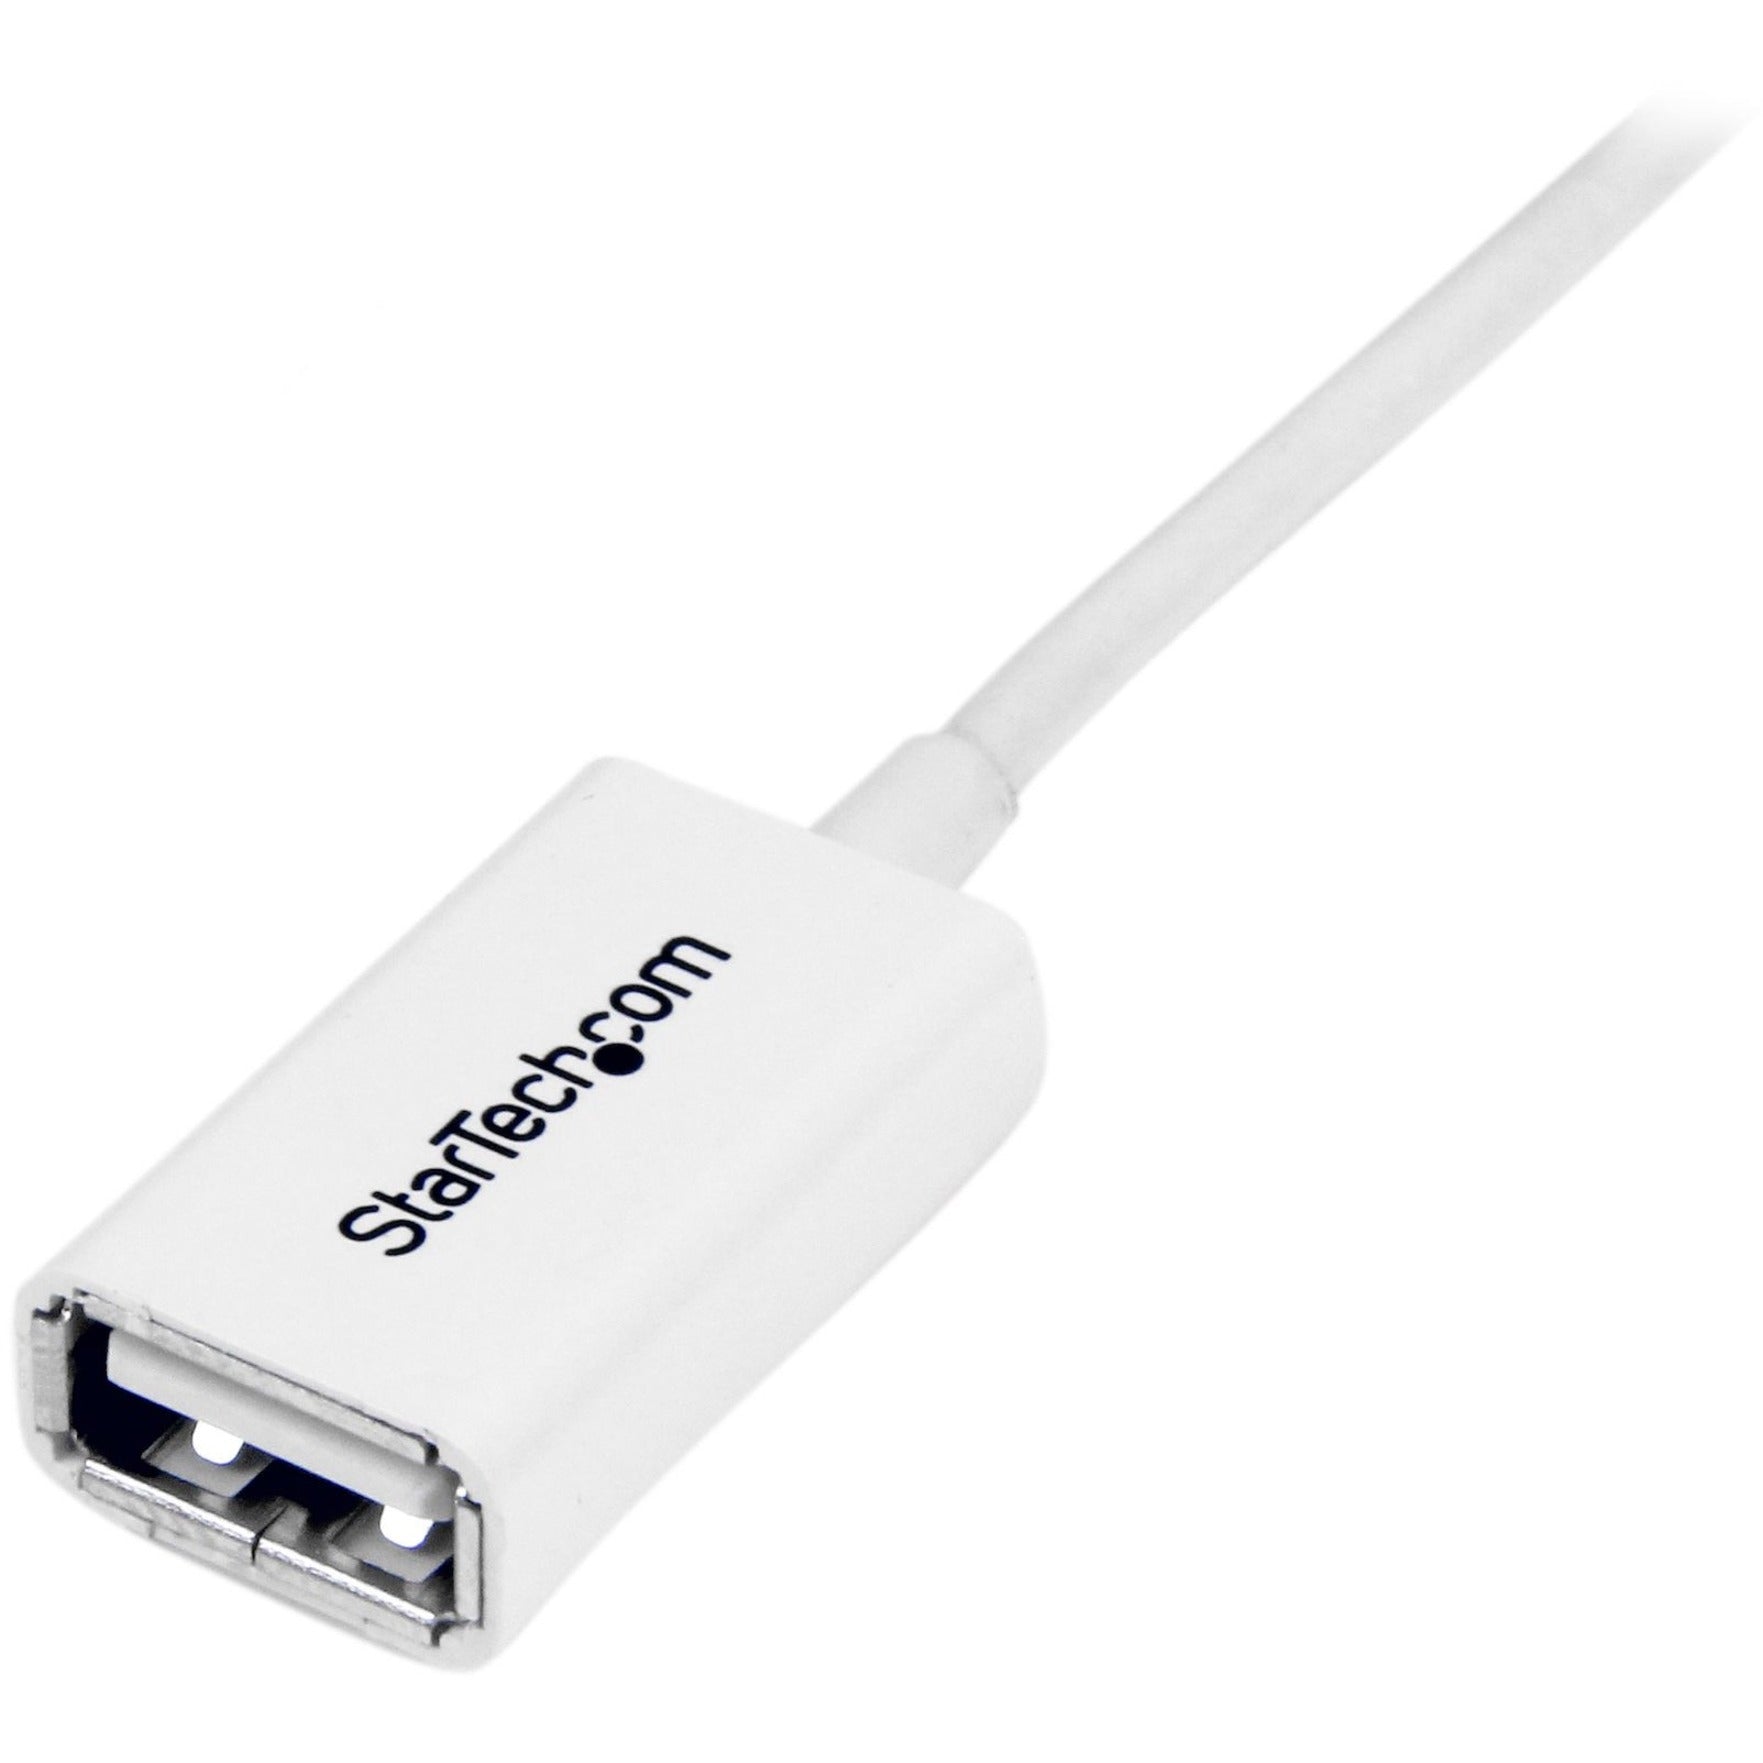 StarTech.com كبل تمديد USB 2.0 أبيض 3 متر A إلى A - ذكر / أنثى ، مصبوب ، مرن ، إغاثة الضغط ، معدل نقل بيانات 480 ميجابت في الثانية